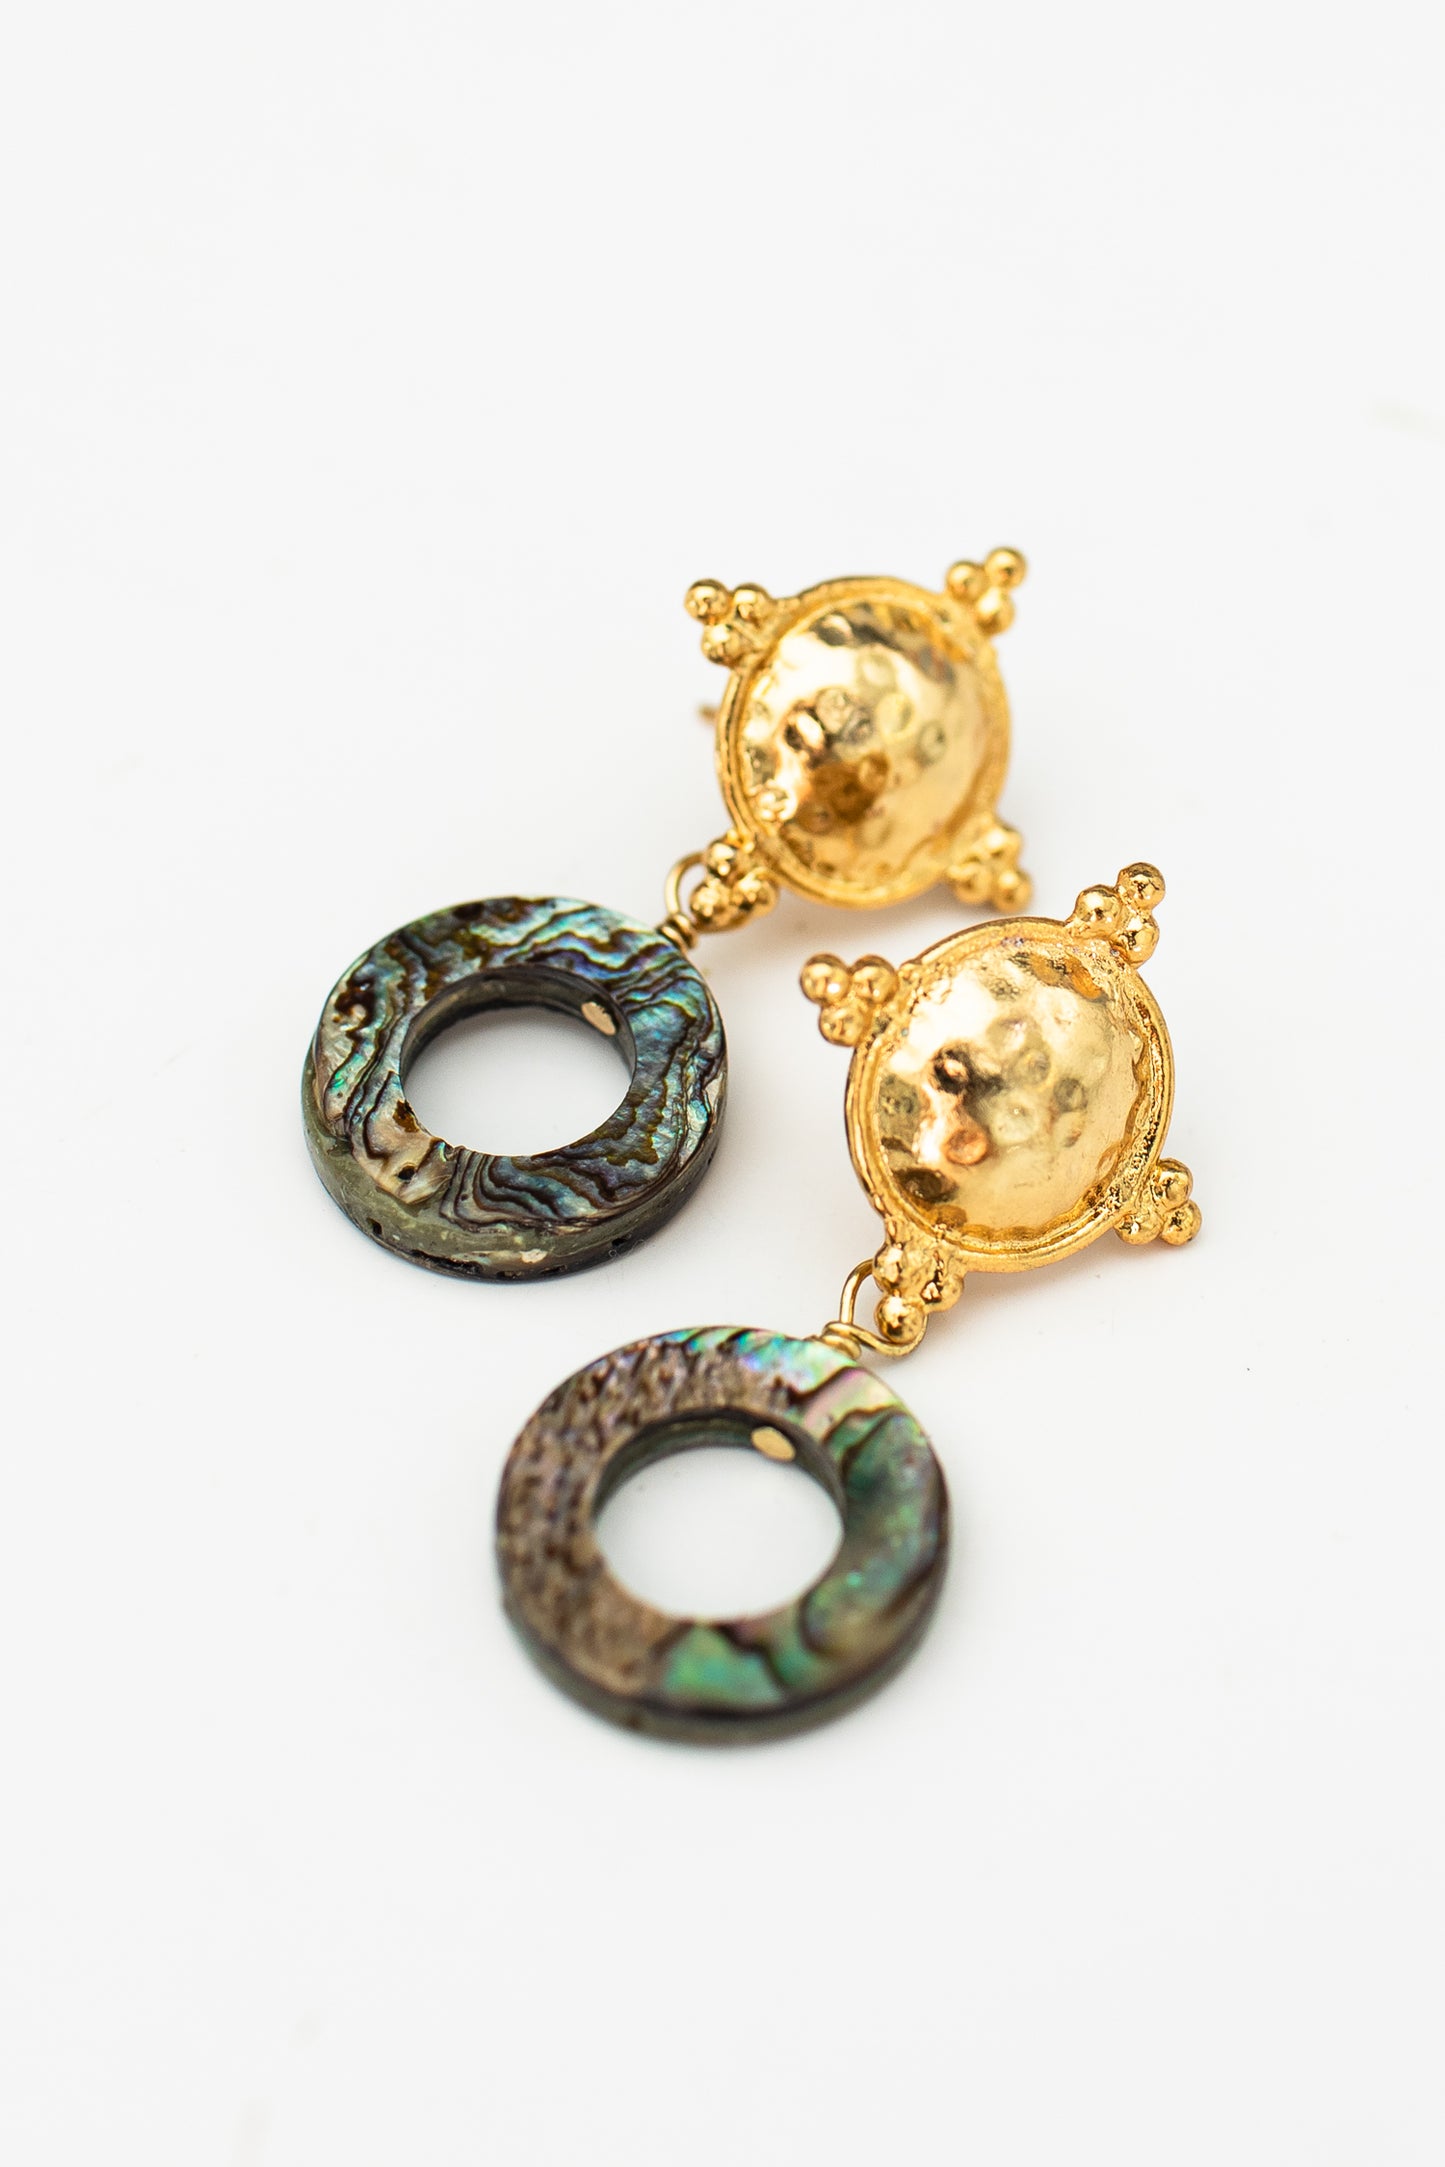 Quatrefoil abalone shell earrings